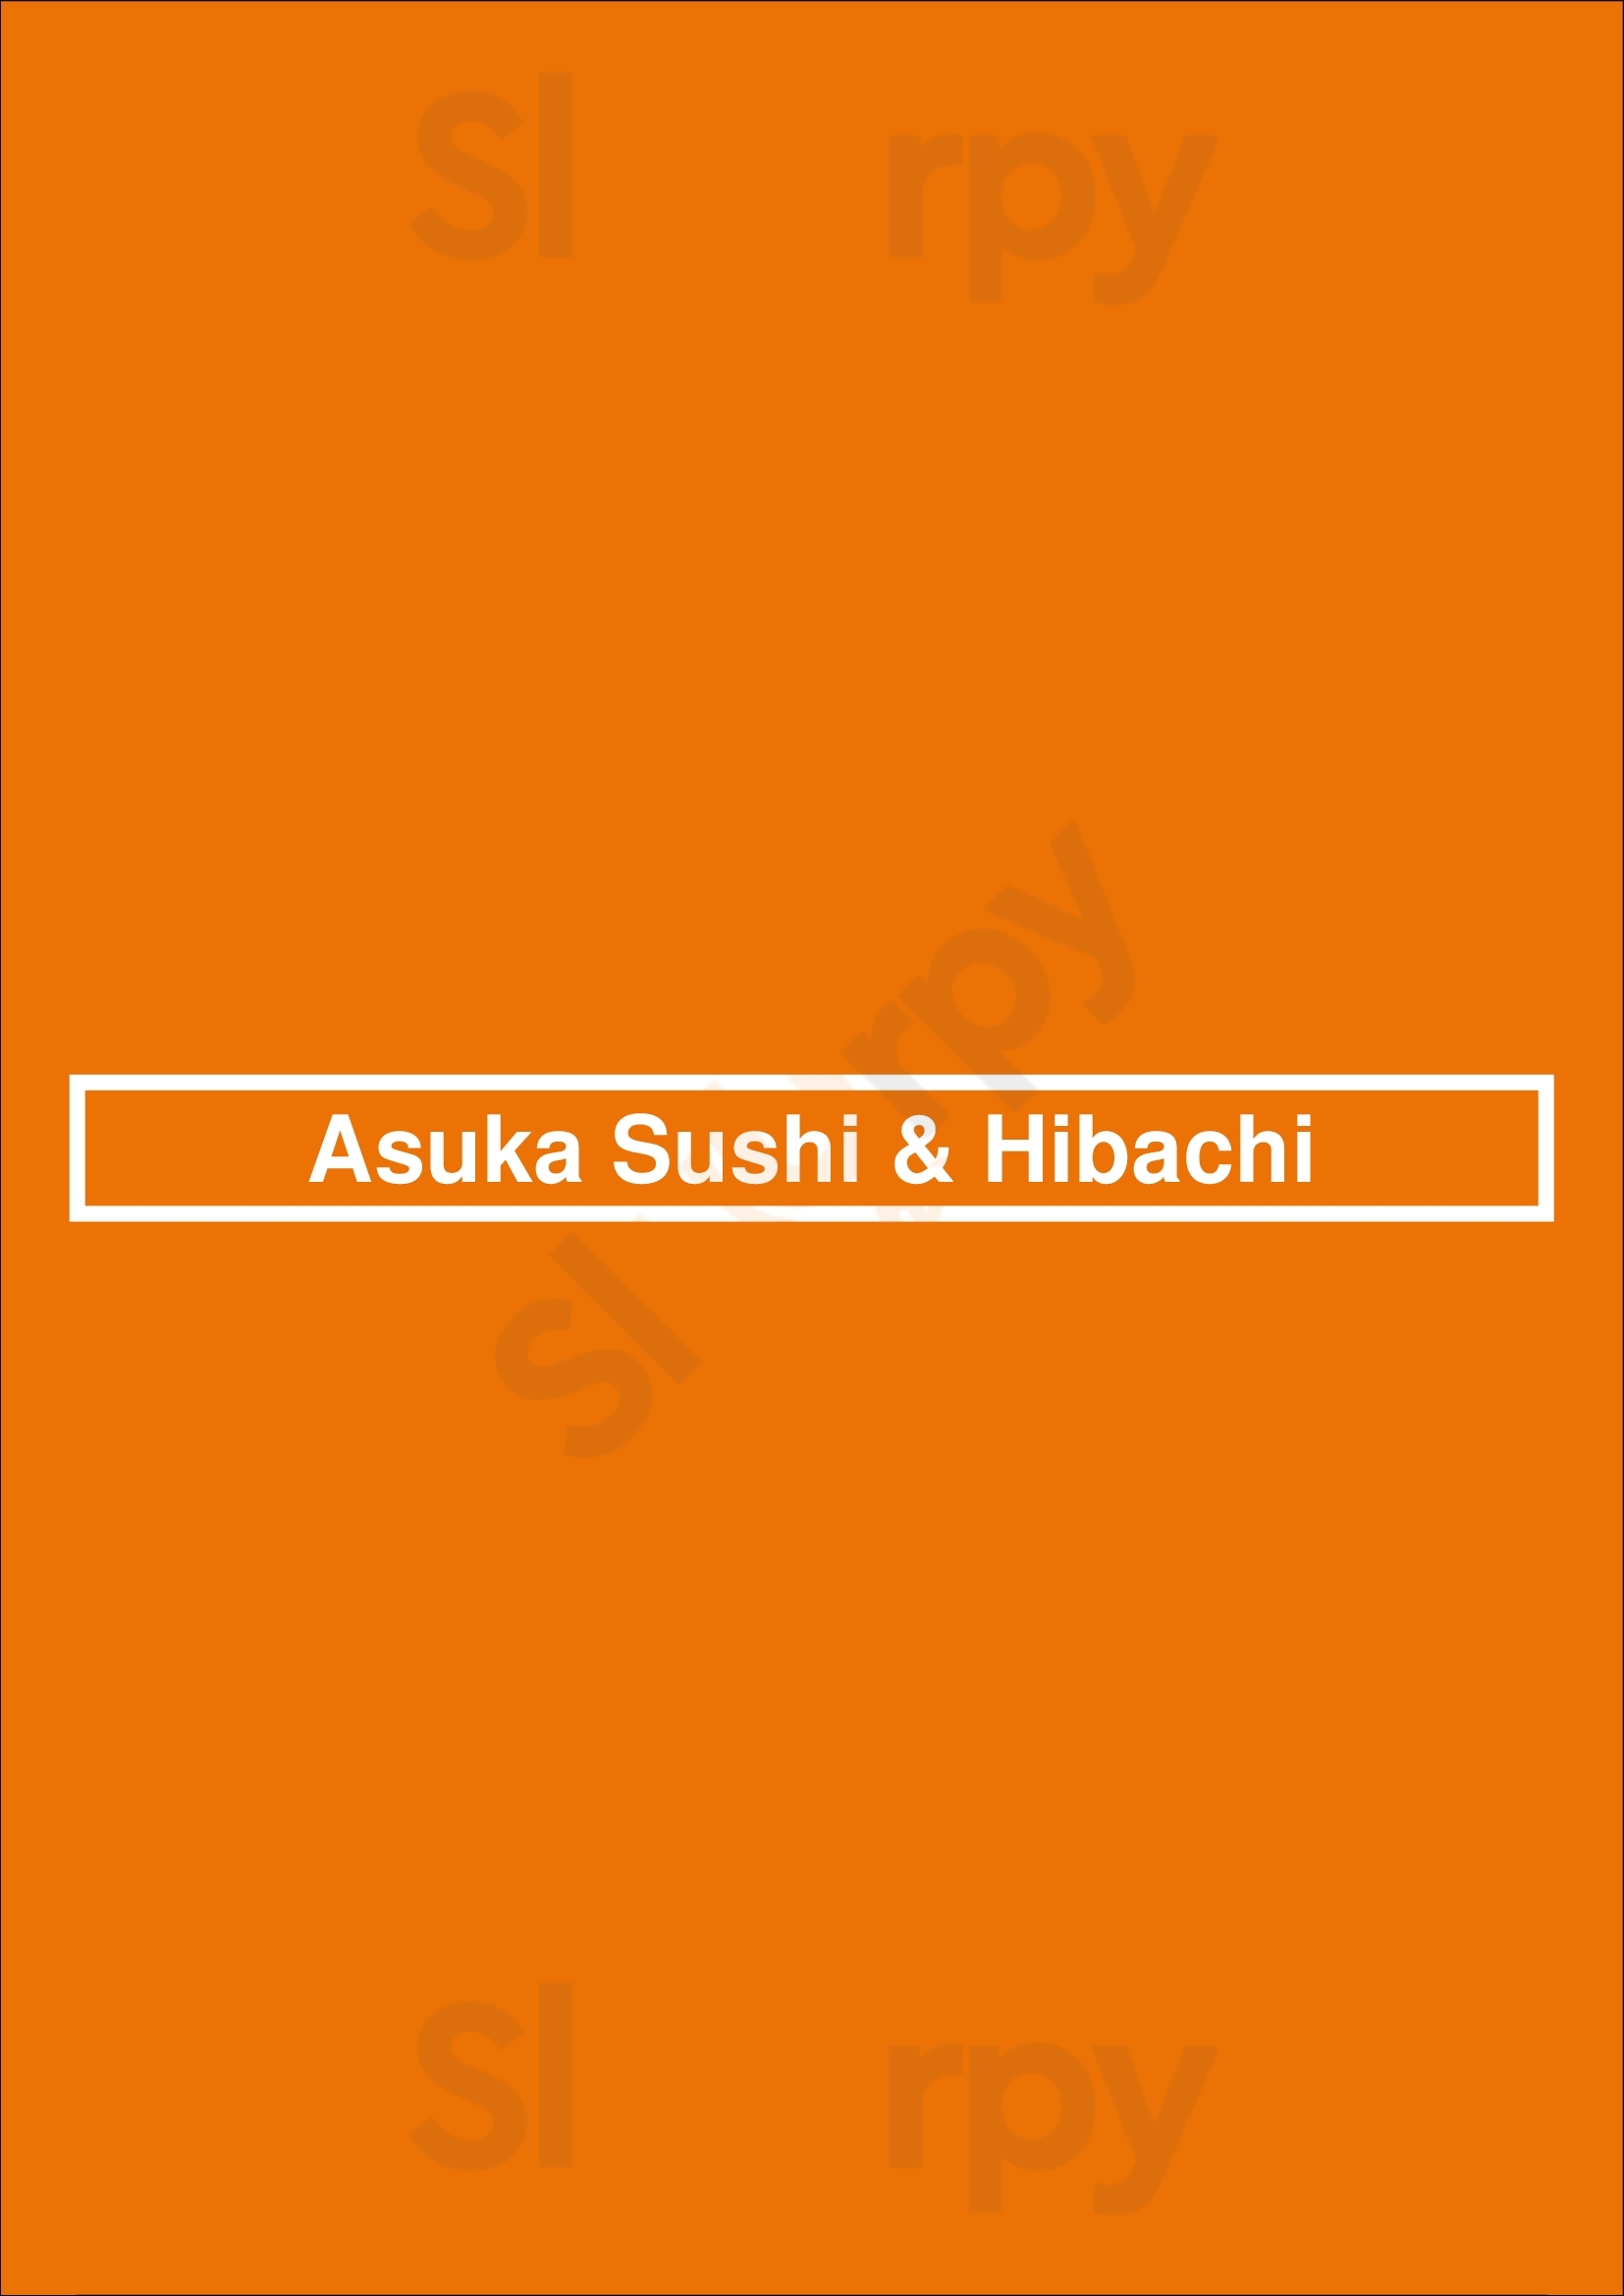 Asuka Sushi & Hibachi New Orleans Menu - 1